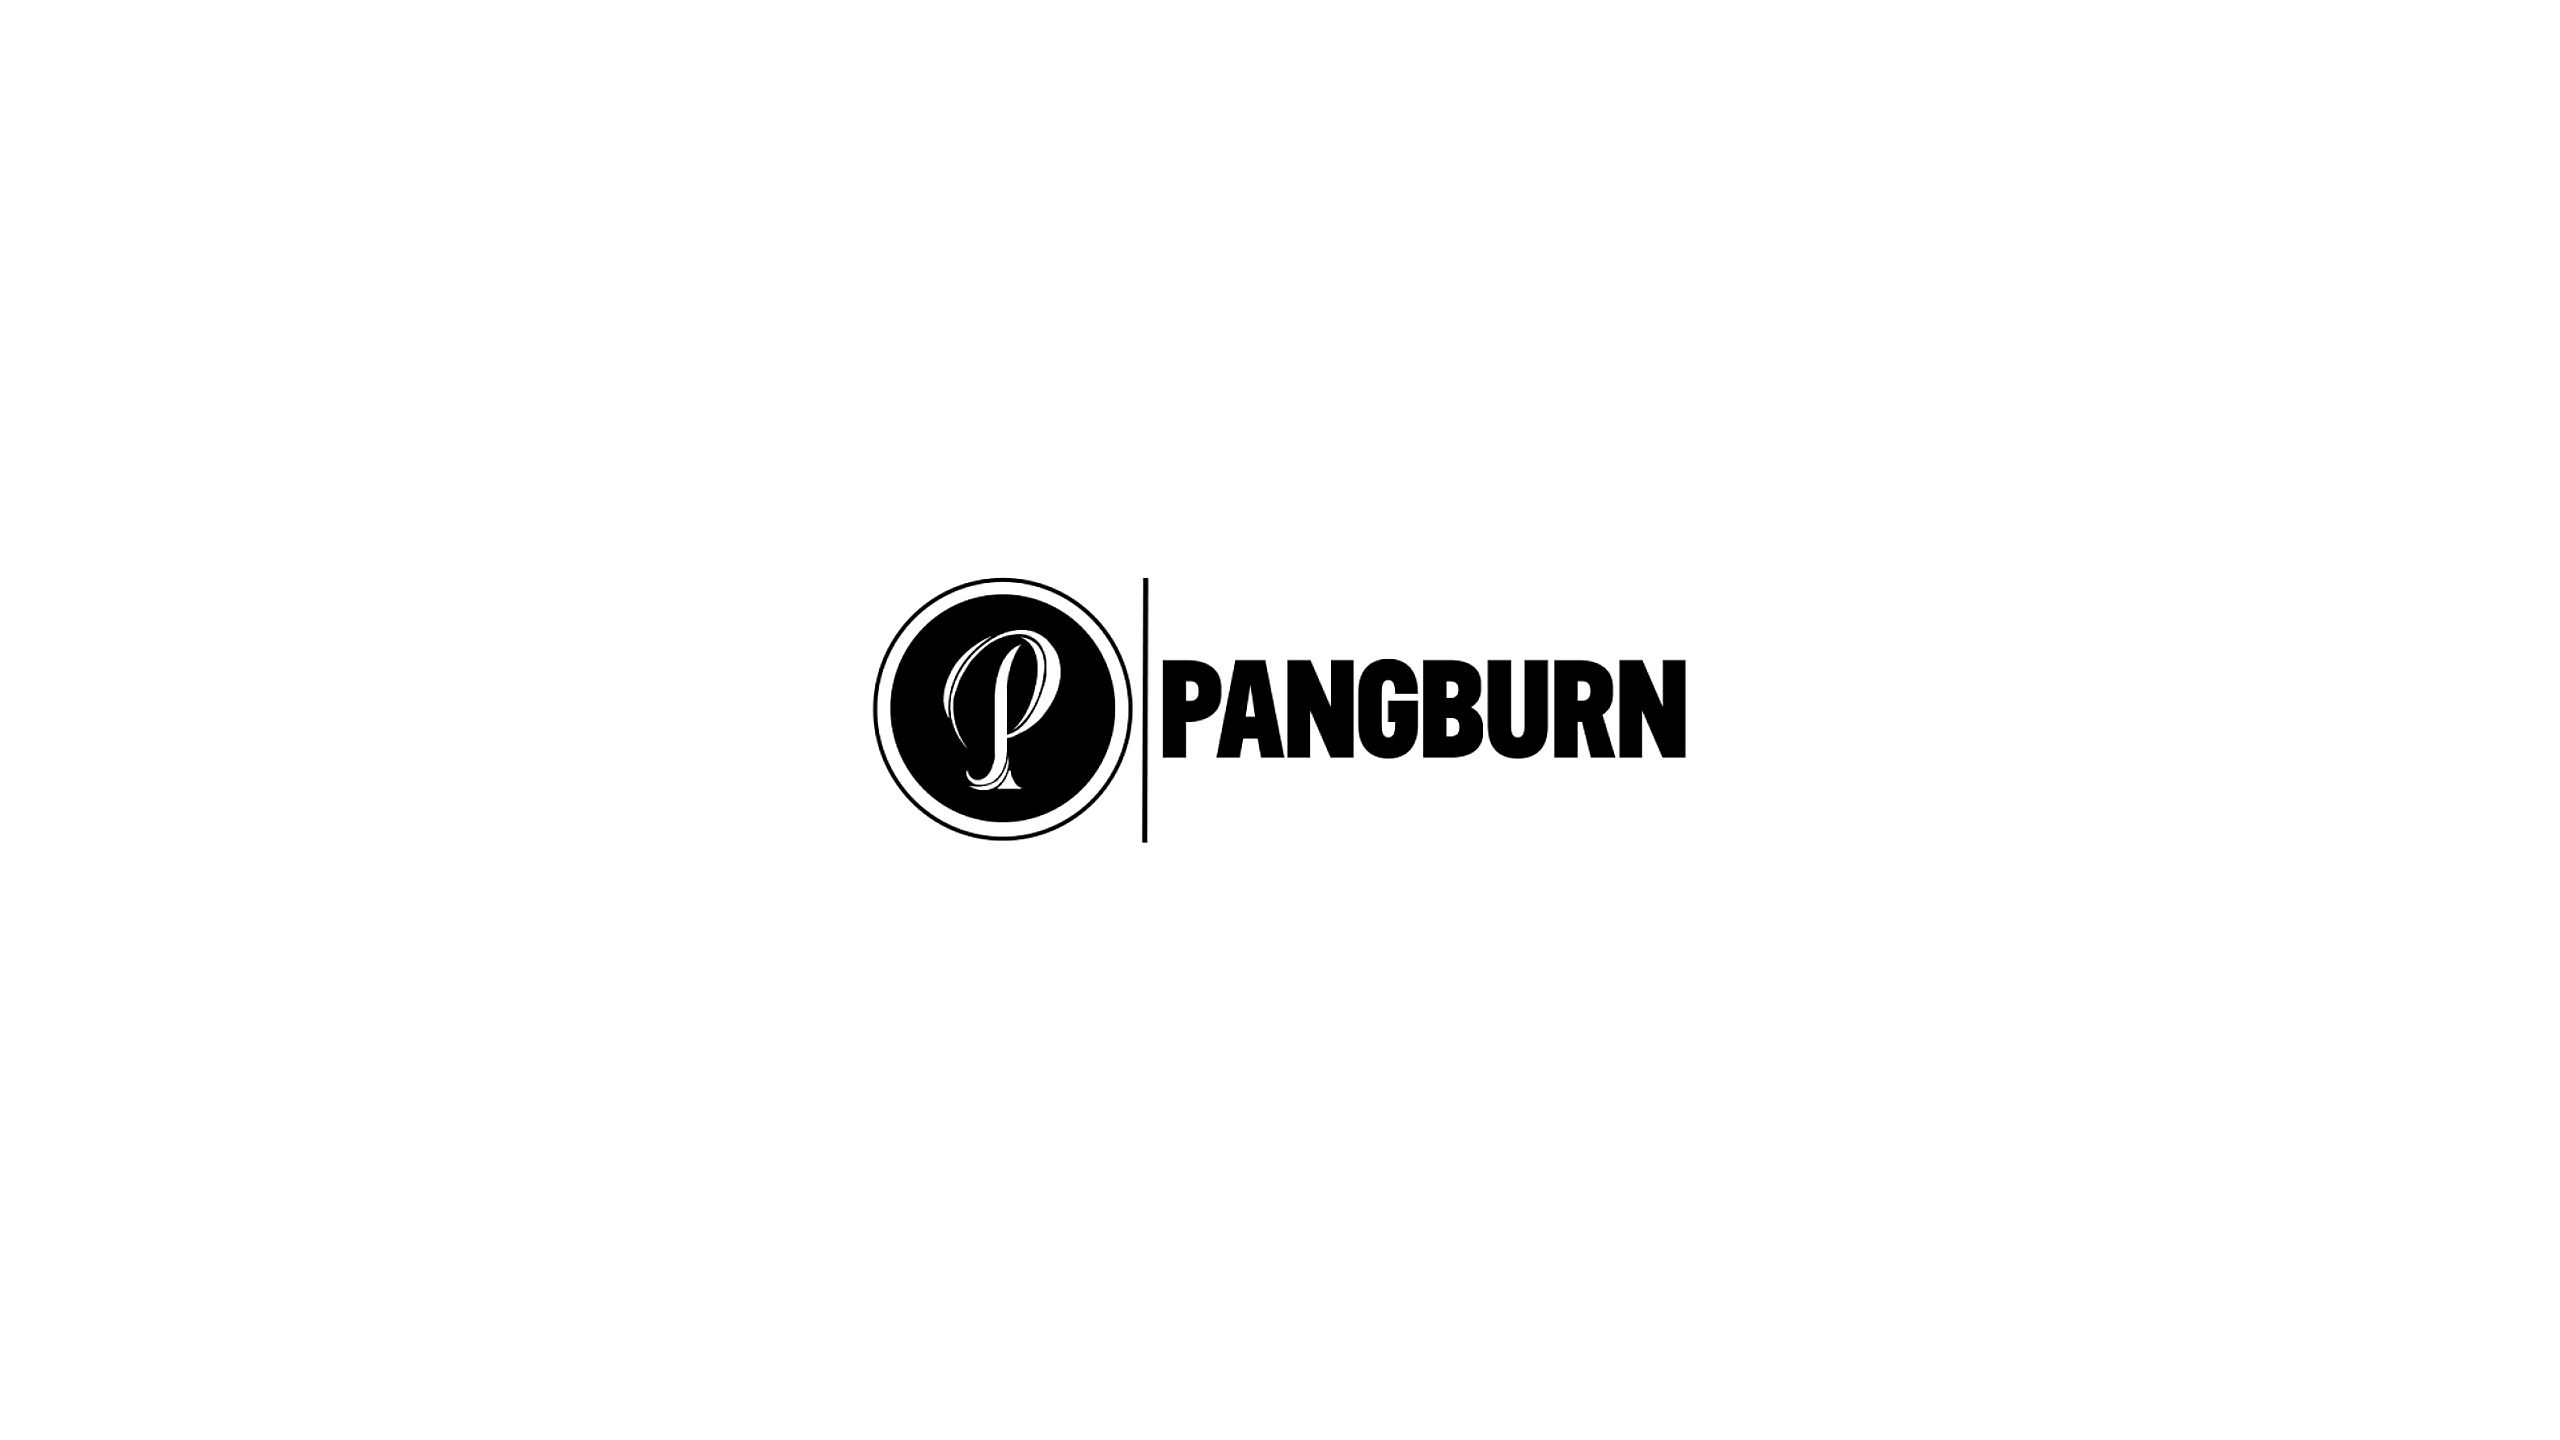 Pangburn